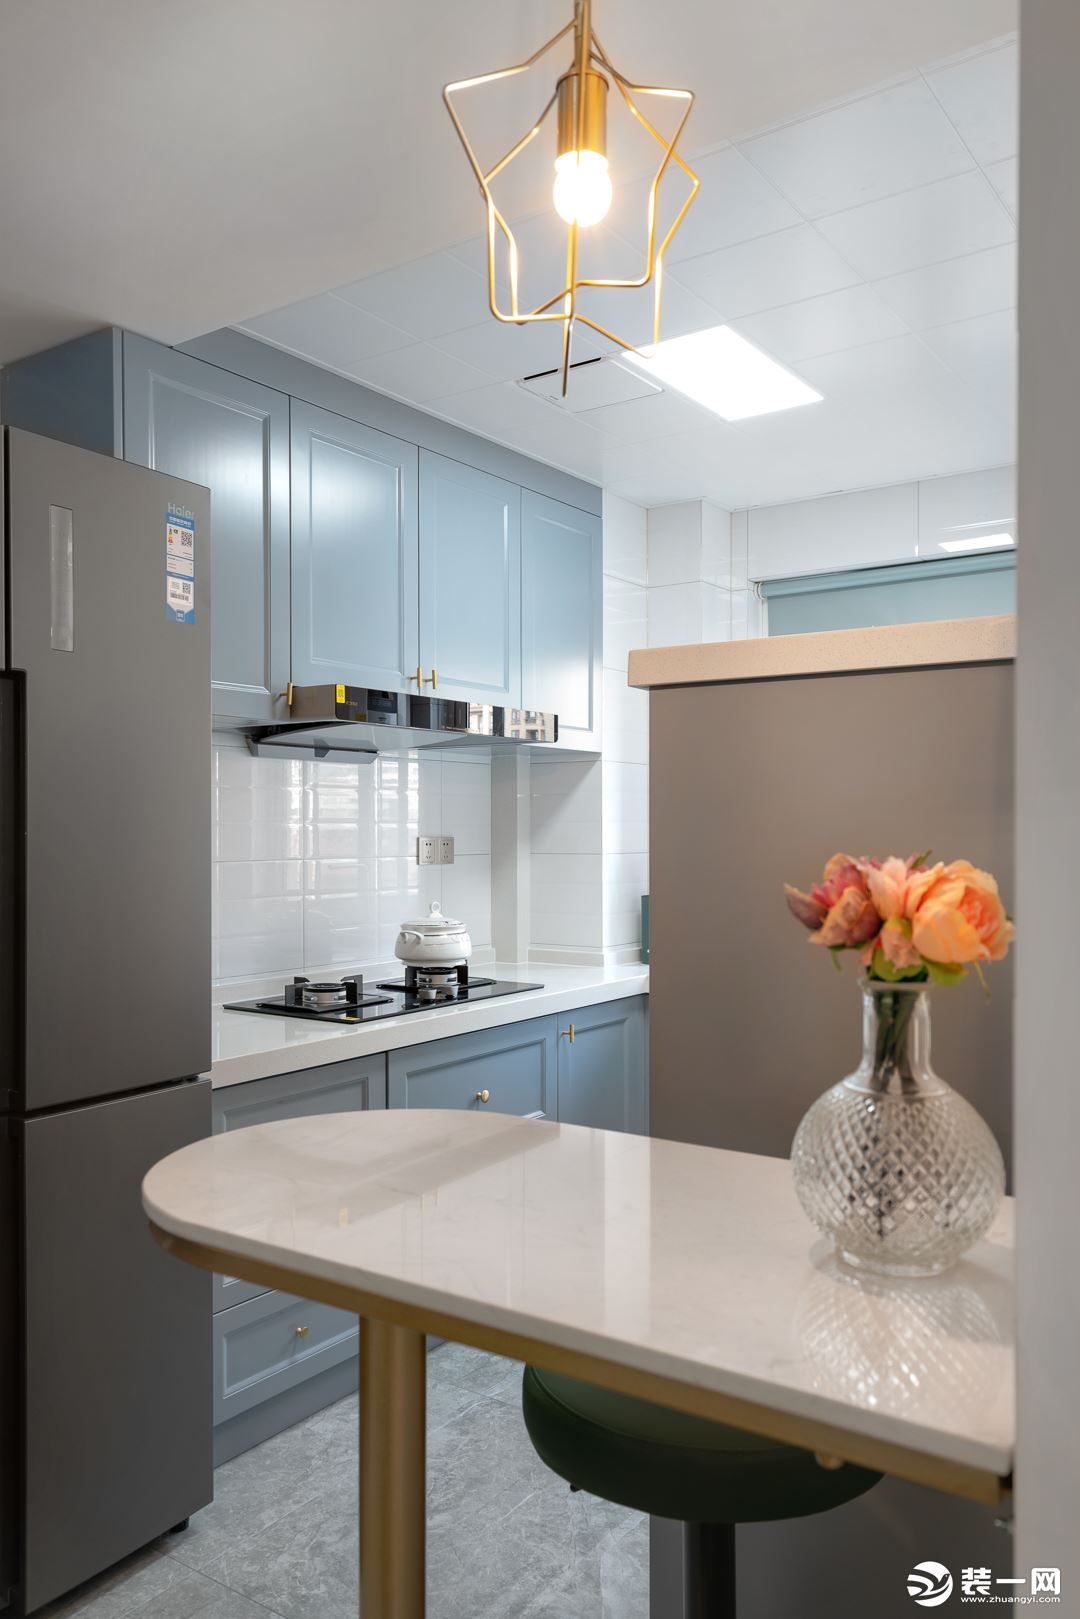 厨房空间采用开放式形式，浅蓝色柜体搭配白色瓷砖，